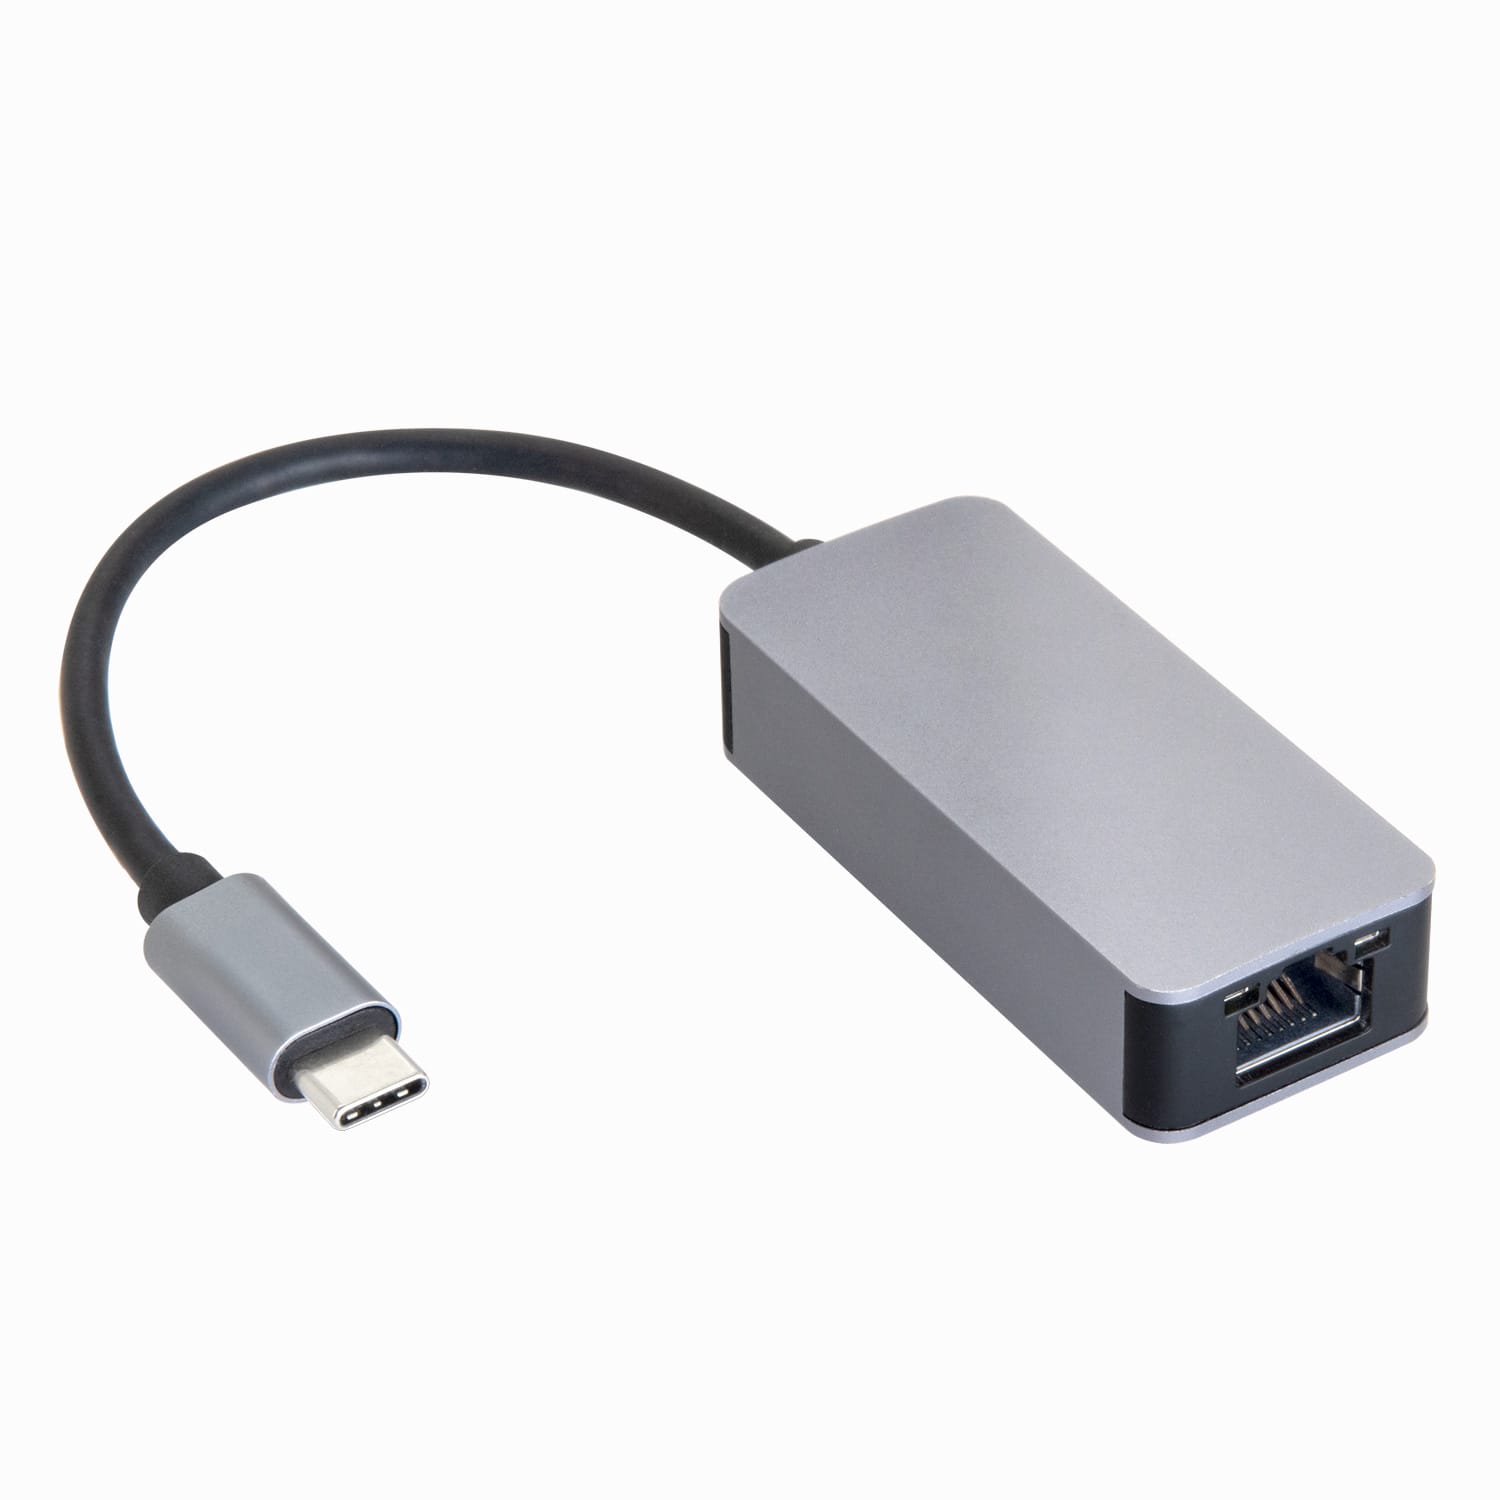 センチュリー、USB-C/A接続の2.5GbE対応LANアダプターを発売